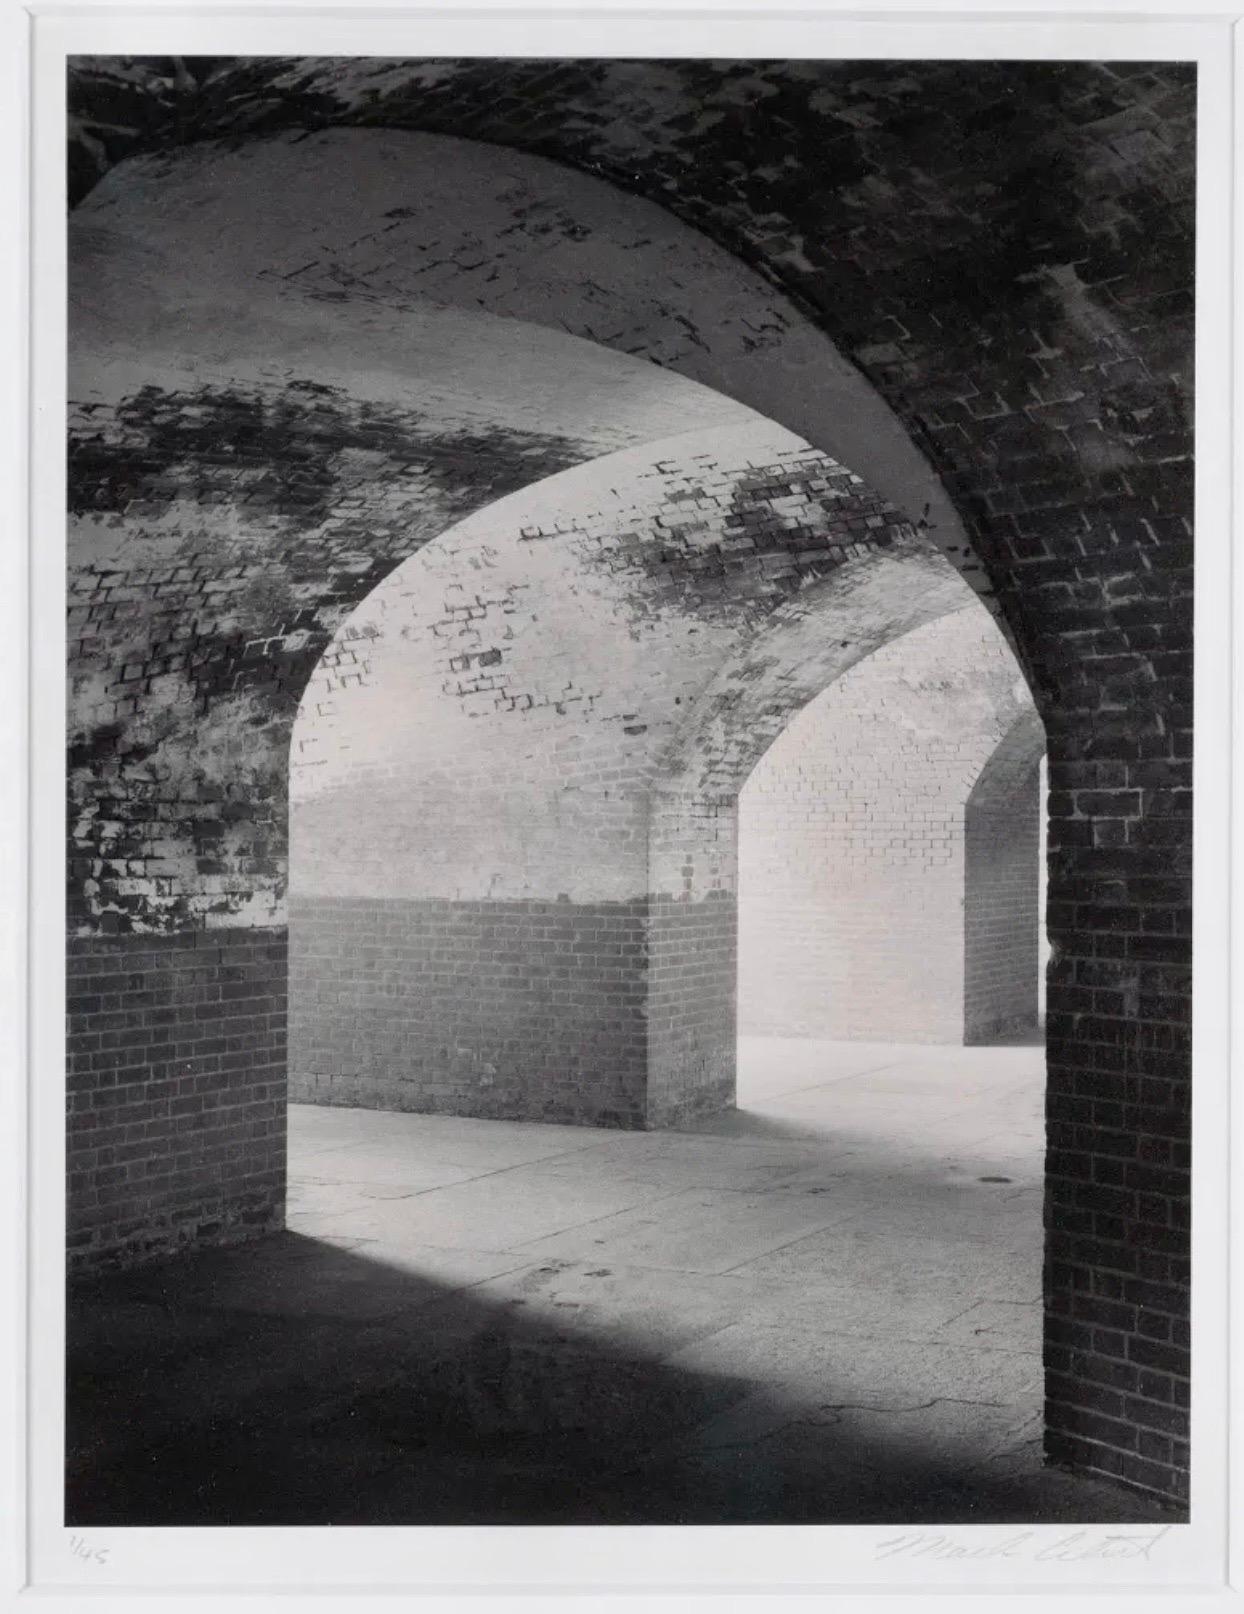 Architektonische Gelatinesilberdruck Pergamentfotografie Mark Ciret Vintage Foto – Photograph von Mark Citret